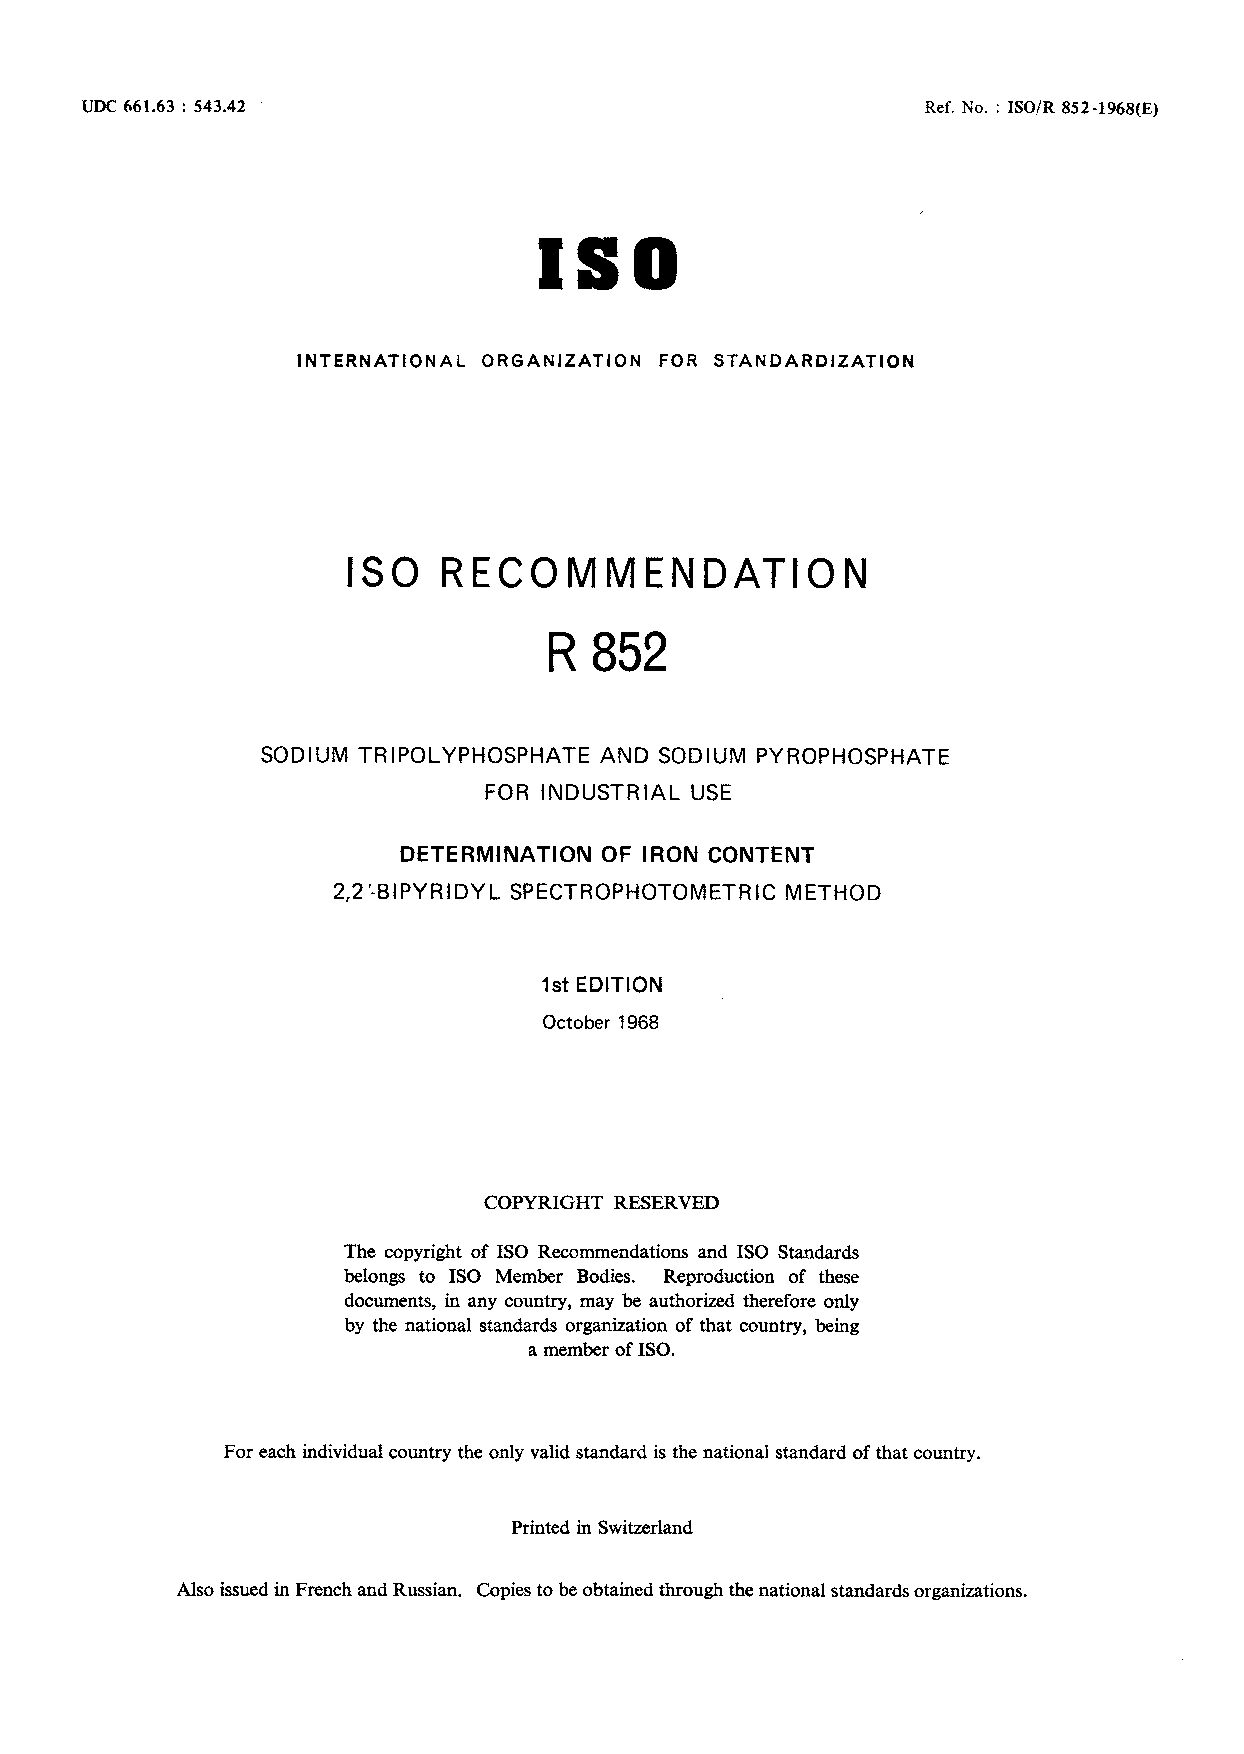 ISO/R 852-1968